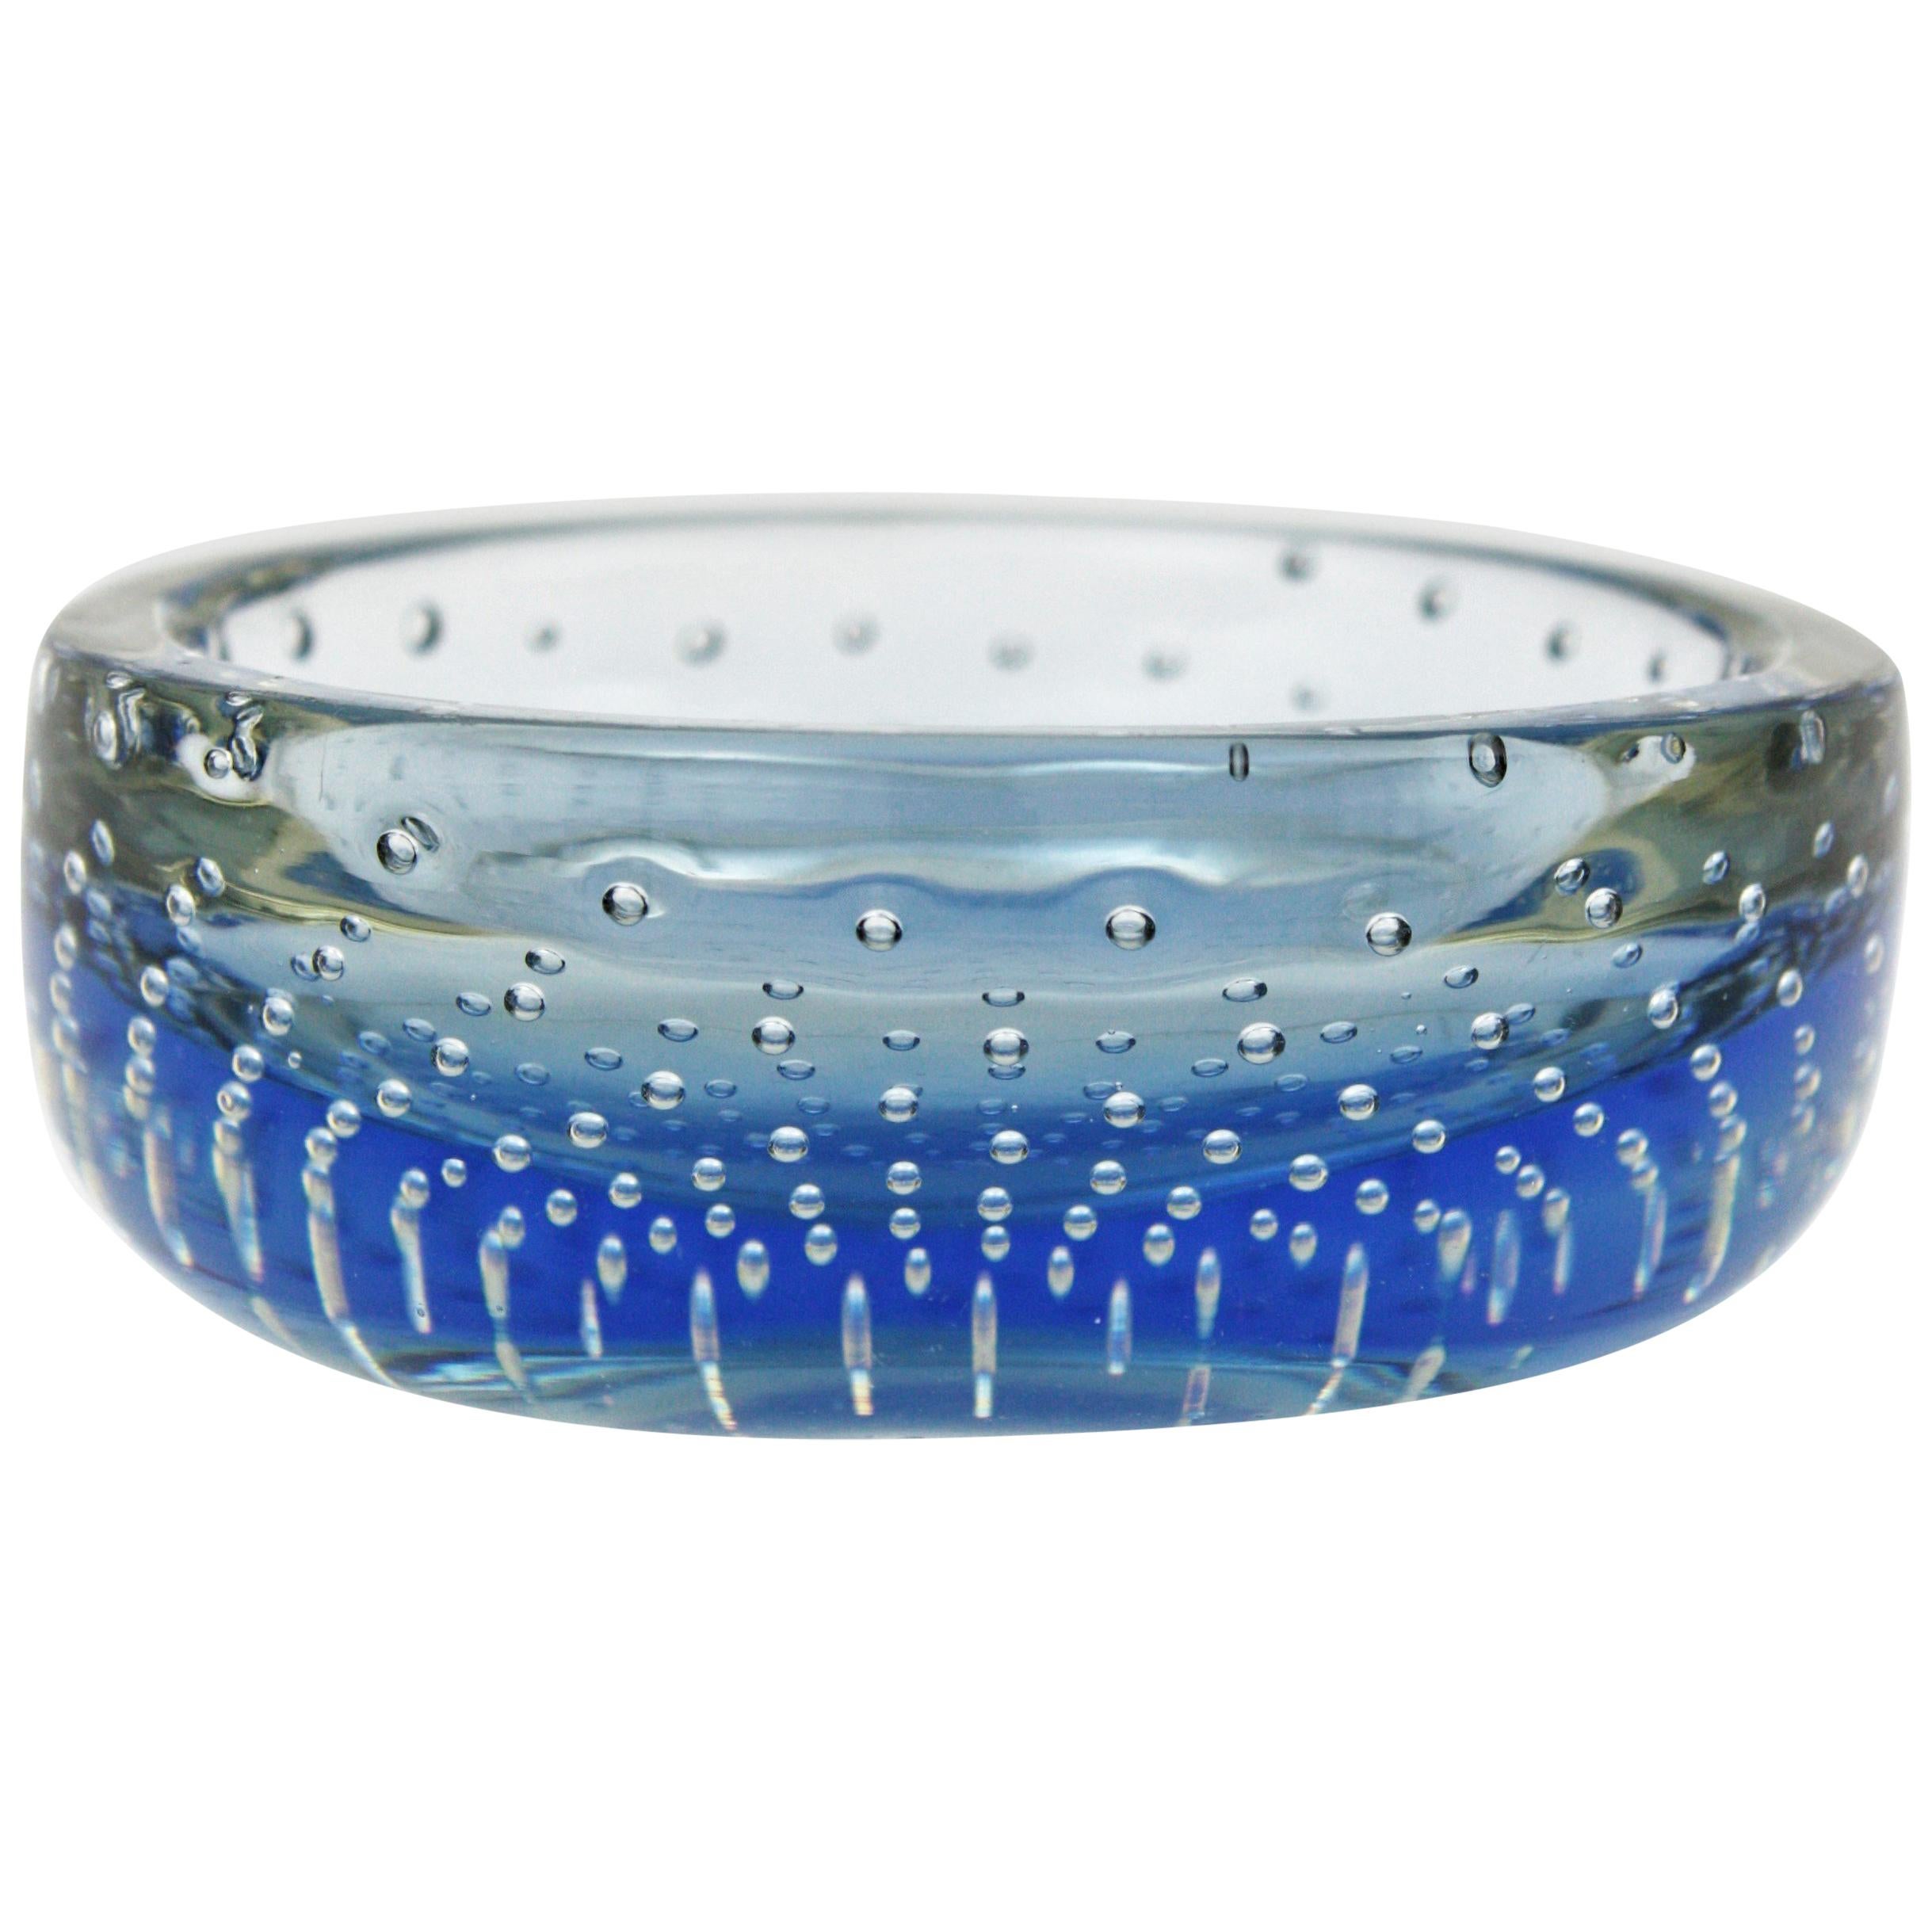 Coupe ou cendrier de forme ronde en verre bleu de Murano soufflé à la main, avec coupe à bulles contrôlées, attribuée à Galliano Ferro. Italie, années 1960.
Verre bleu encastré dans du verre clair selon la technique Sommerso. 
Joli pour être utilisé